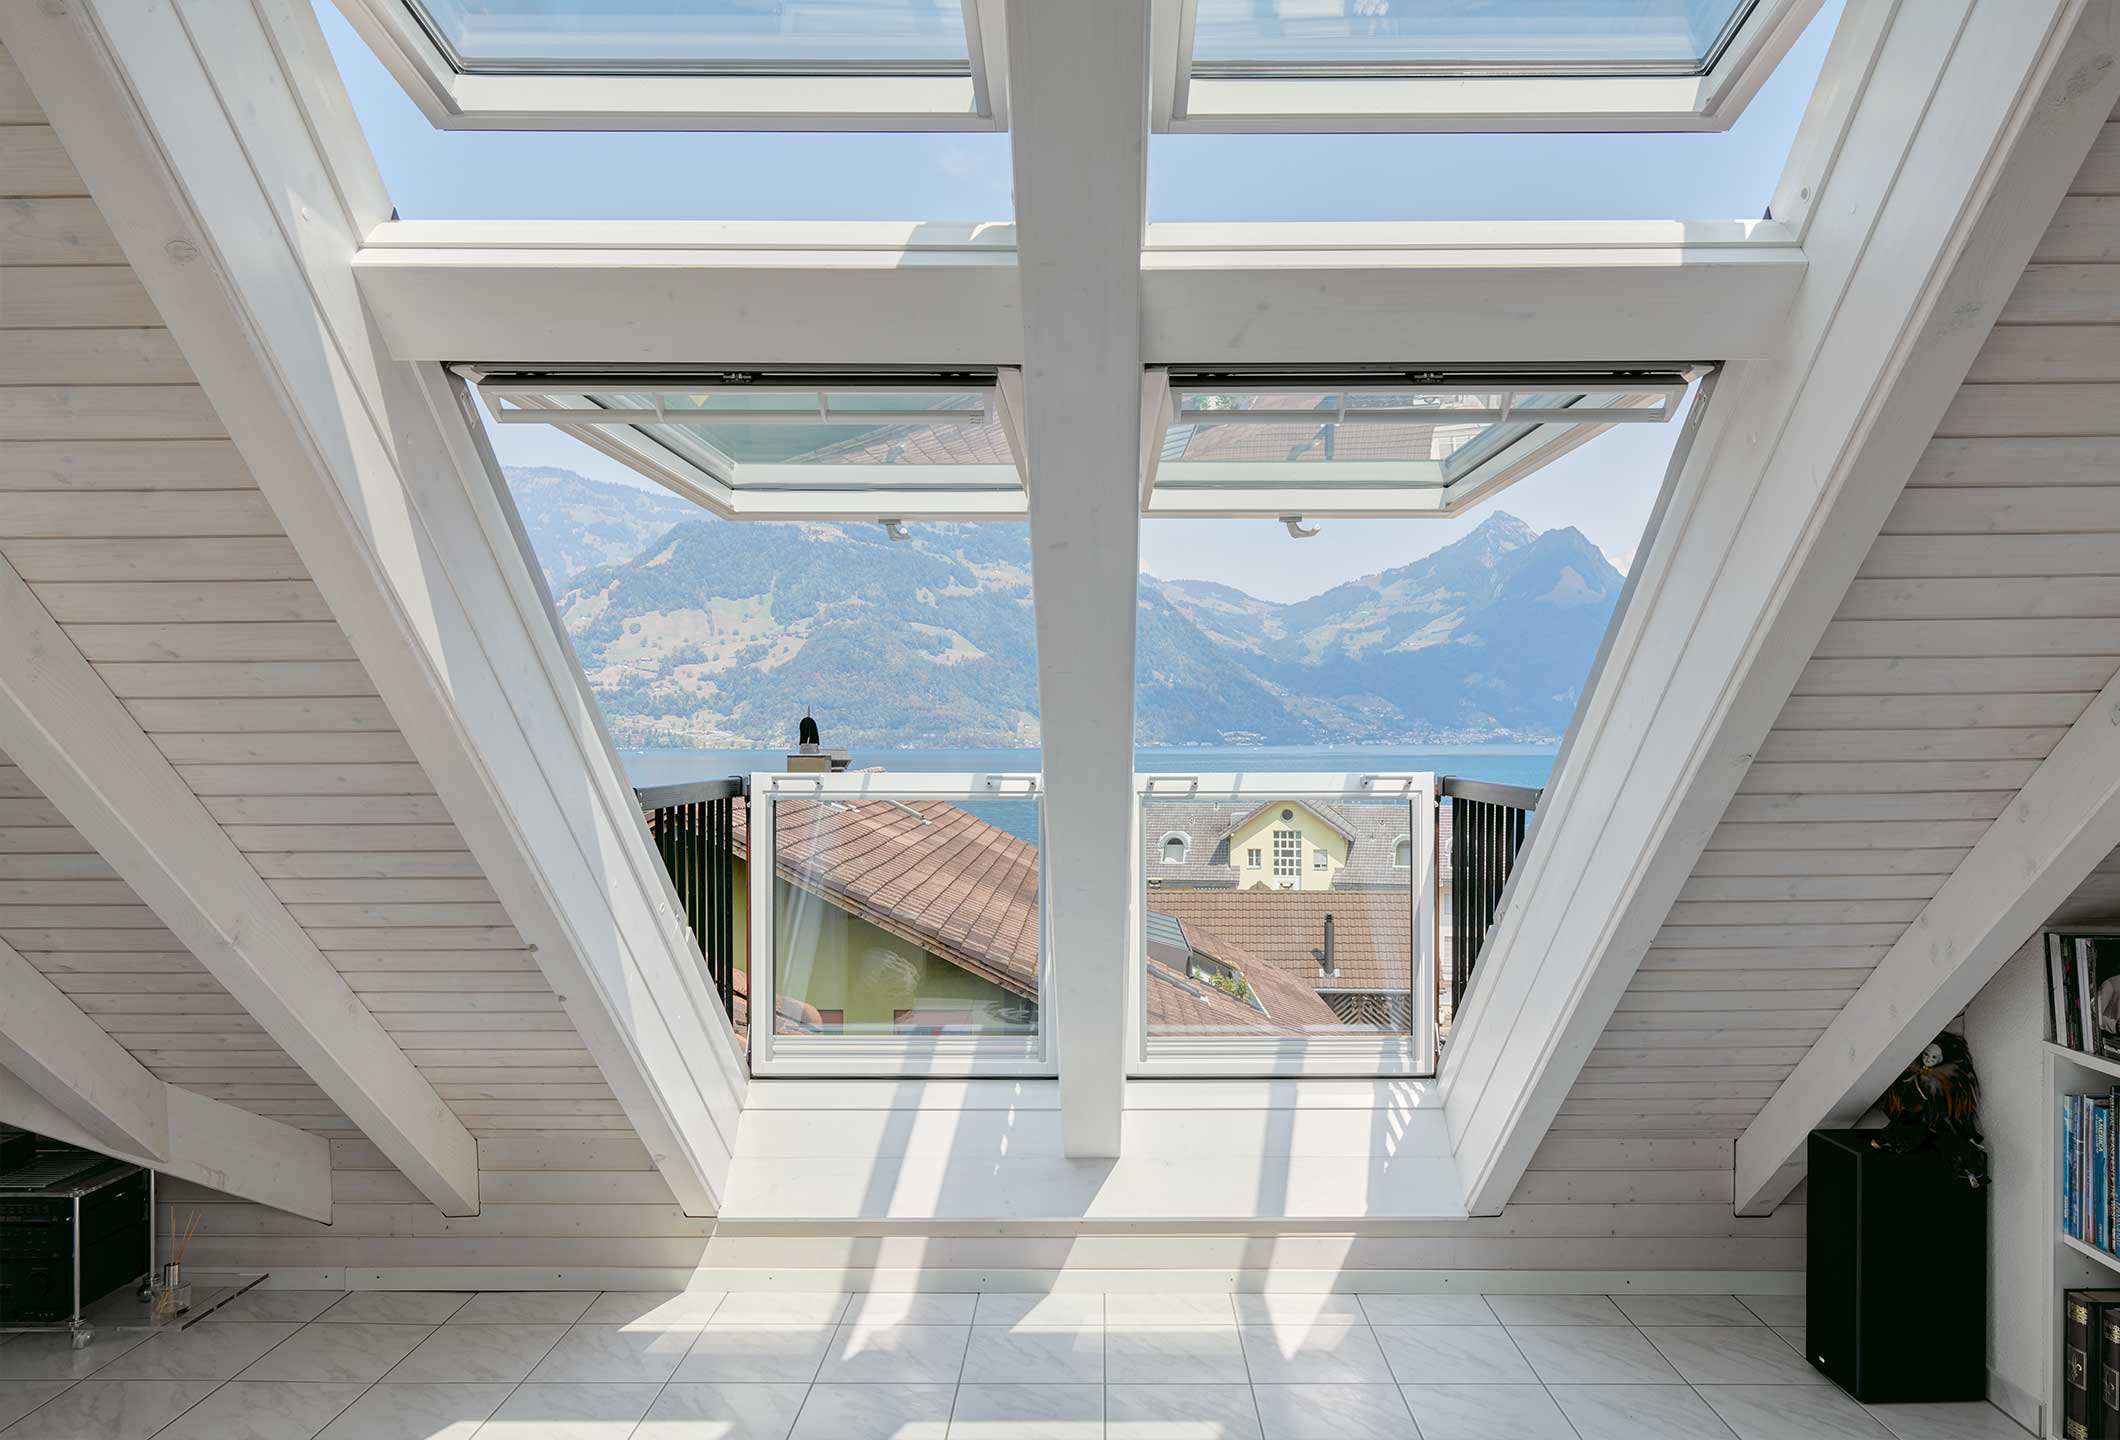 Dachfenster bei Max Schierer Baustoffe